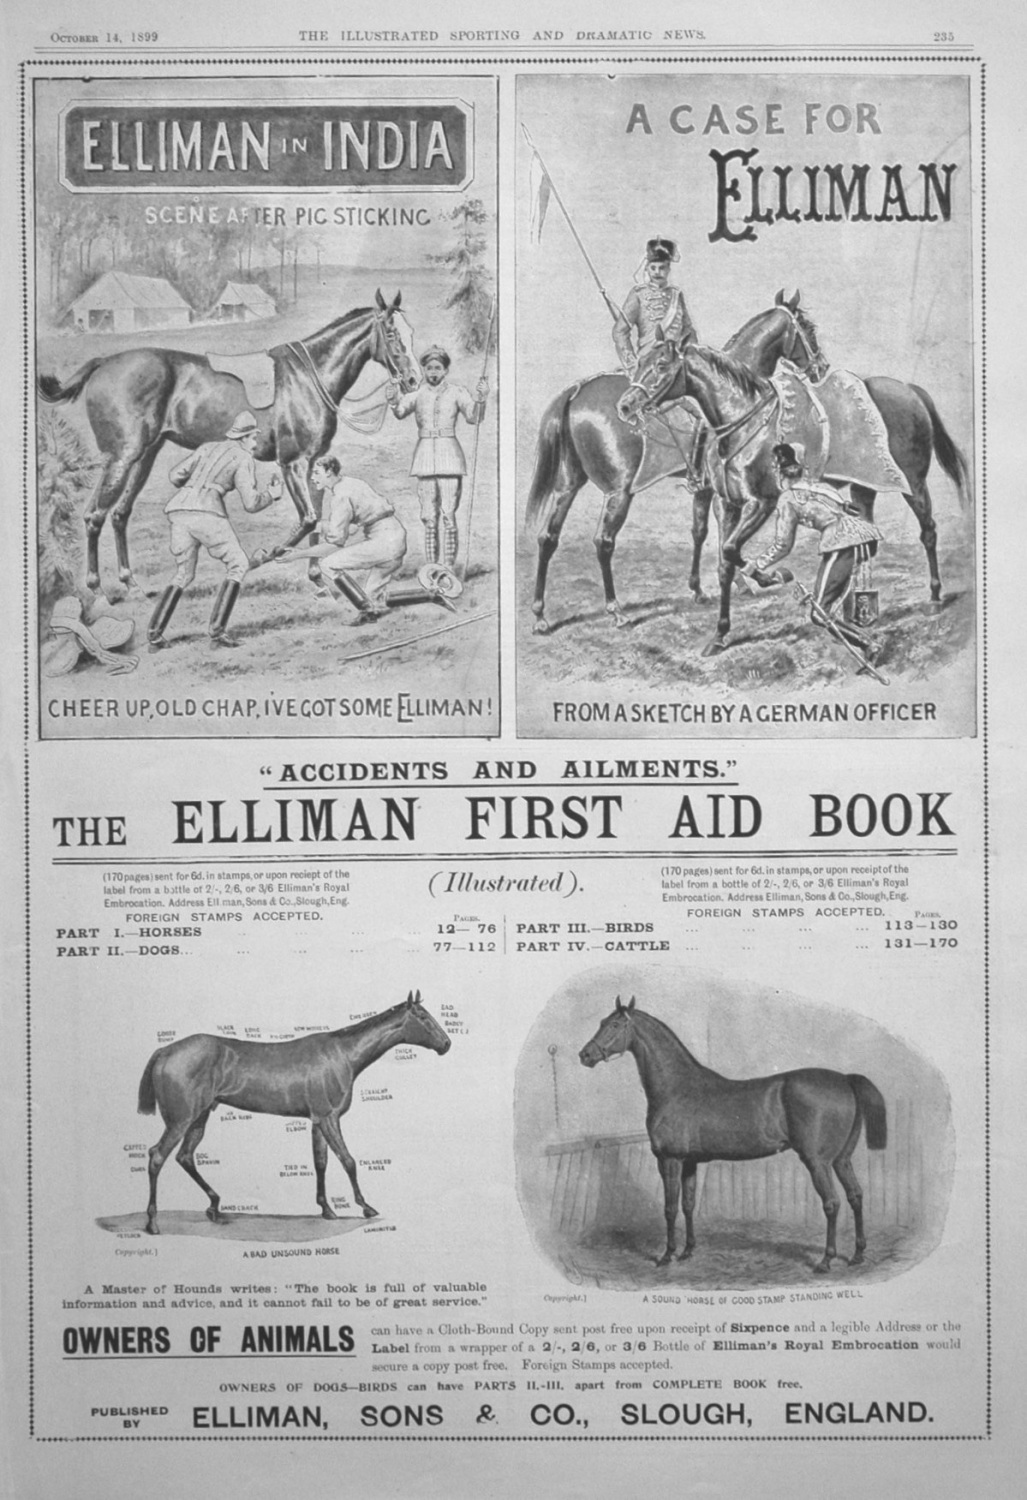 Elliman, Sons & Co. 1899